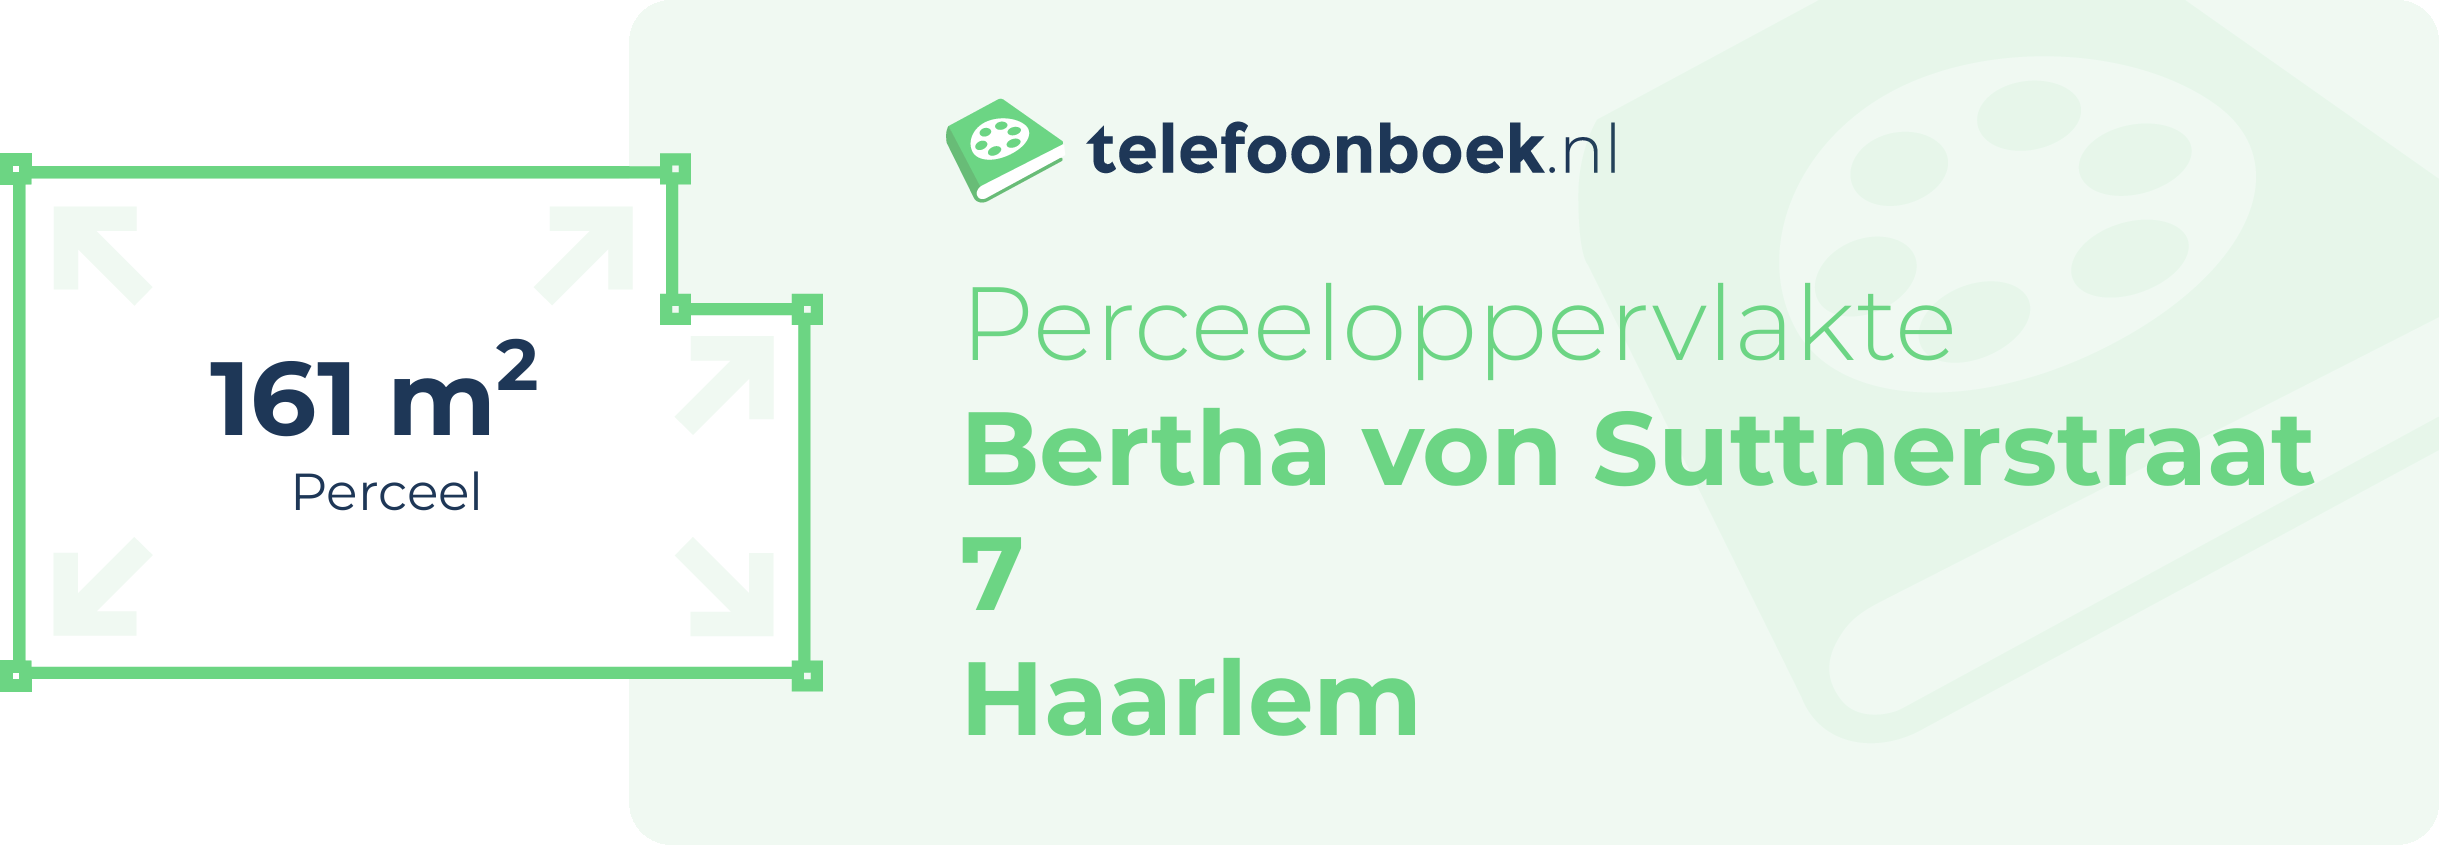 Perceeloppervlakte Bertha Von Suttnerstraat 7 Haarlem